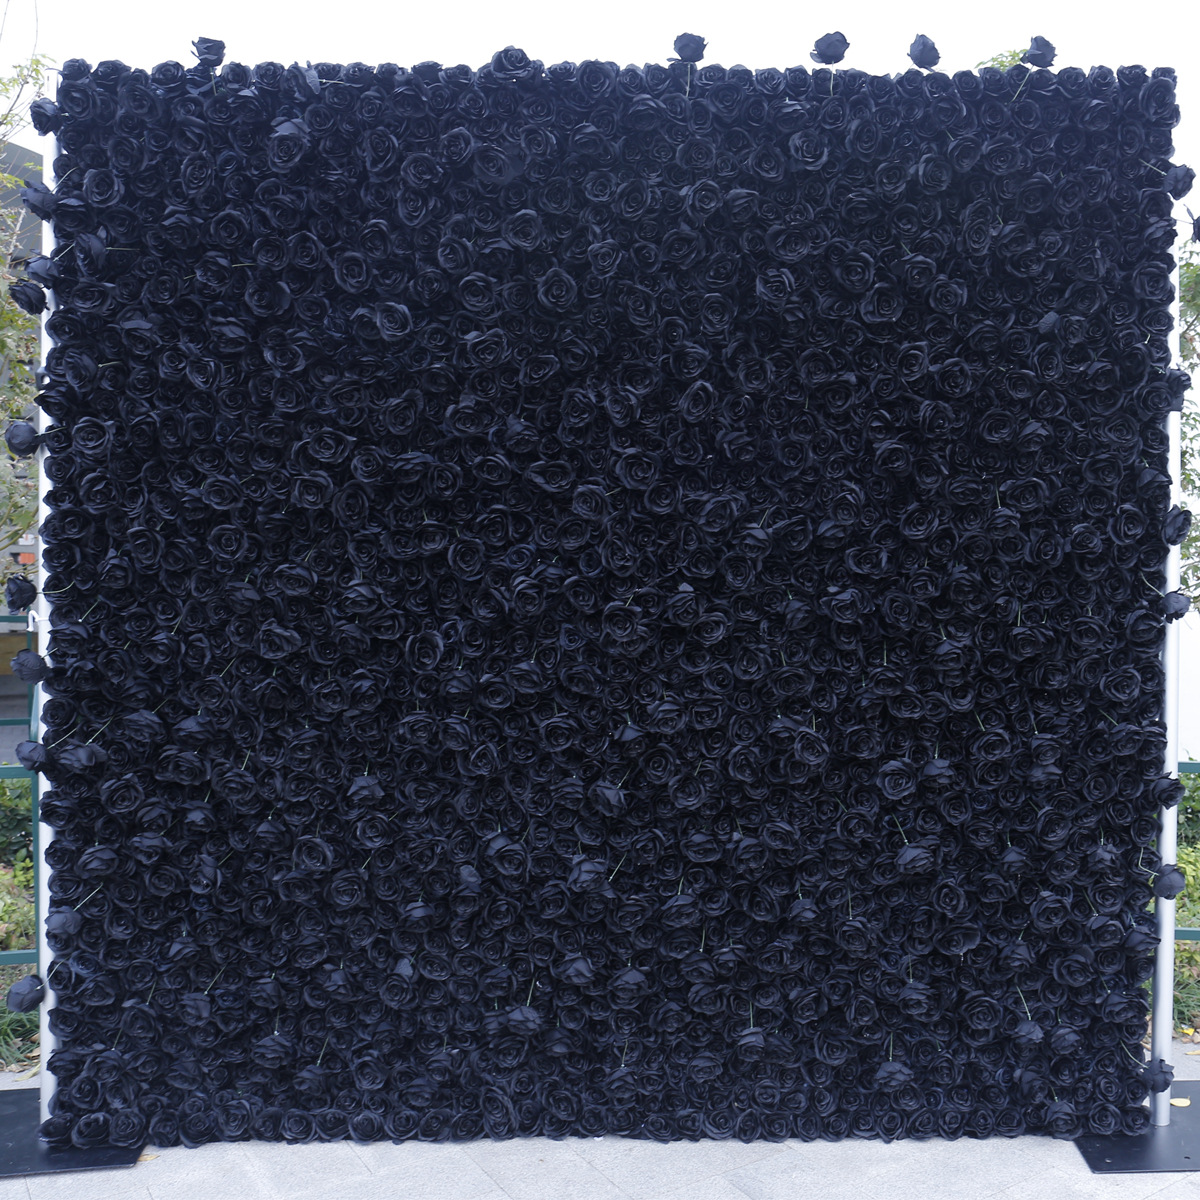 Crno platno dno simulacija ružičastog zida pozadinski zid visoke gustoće 5D trodimenzionalni krajolik aktivnosti na otvorenom